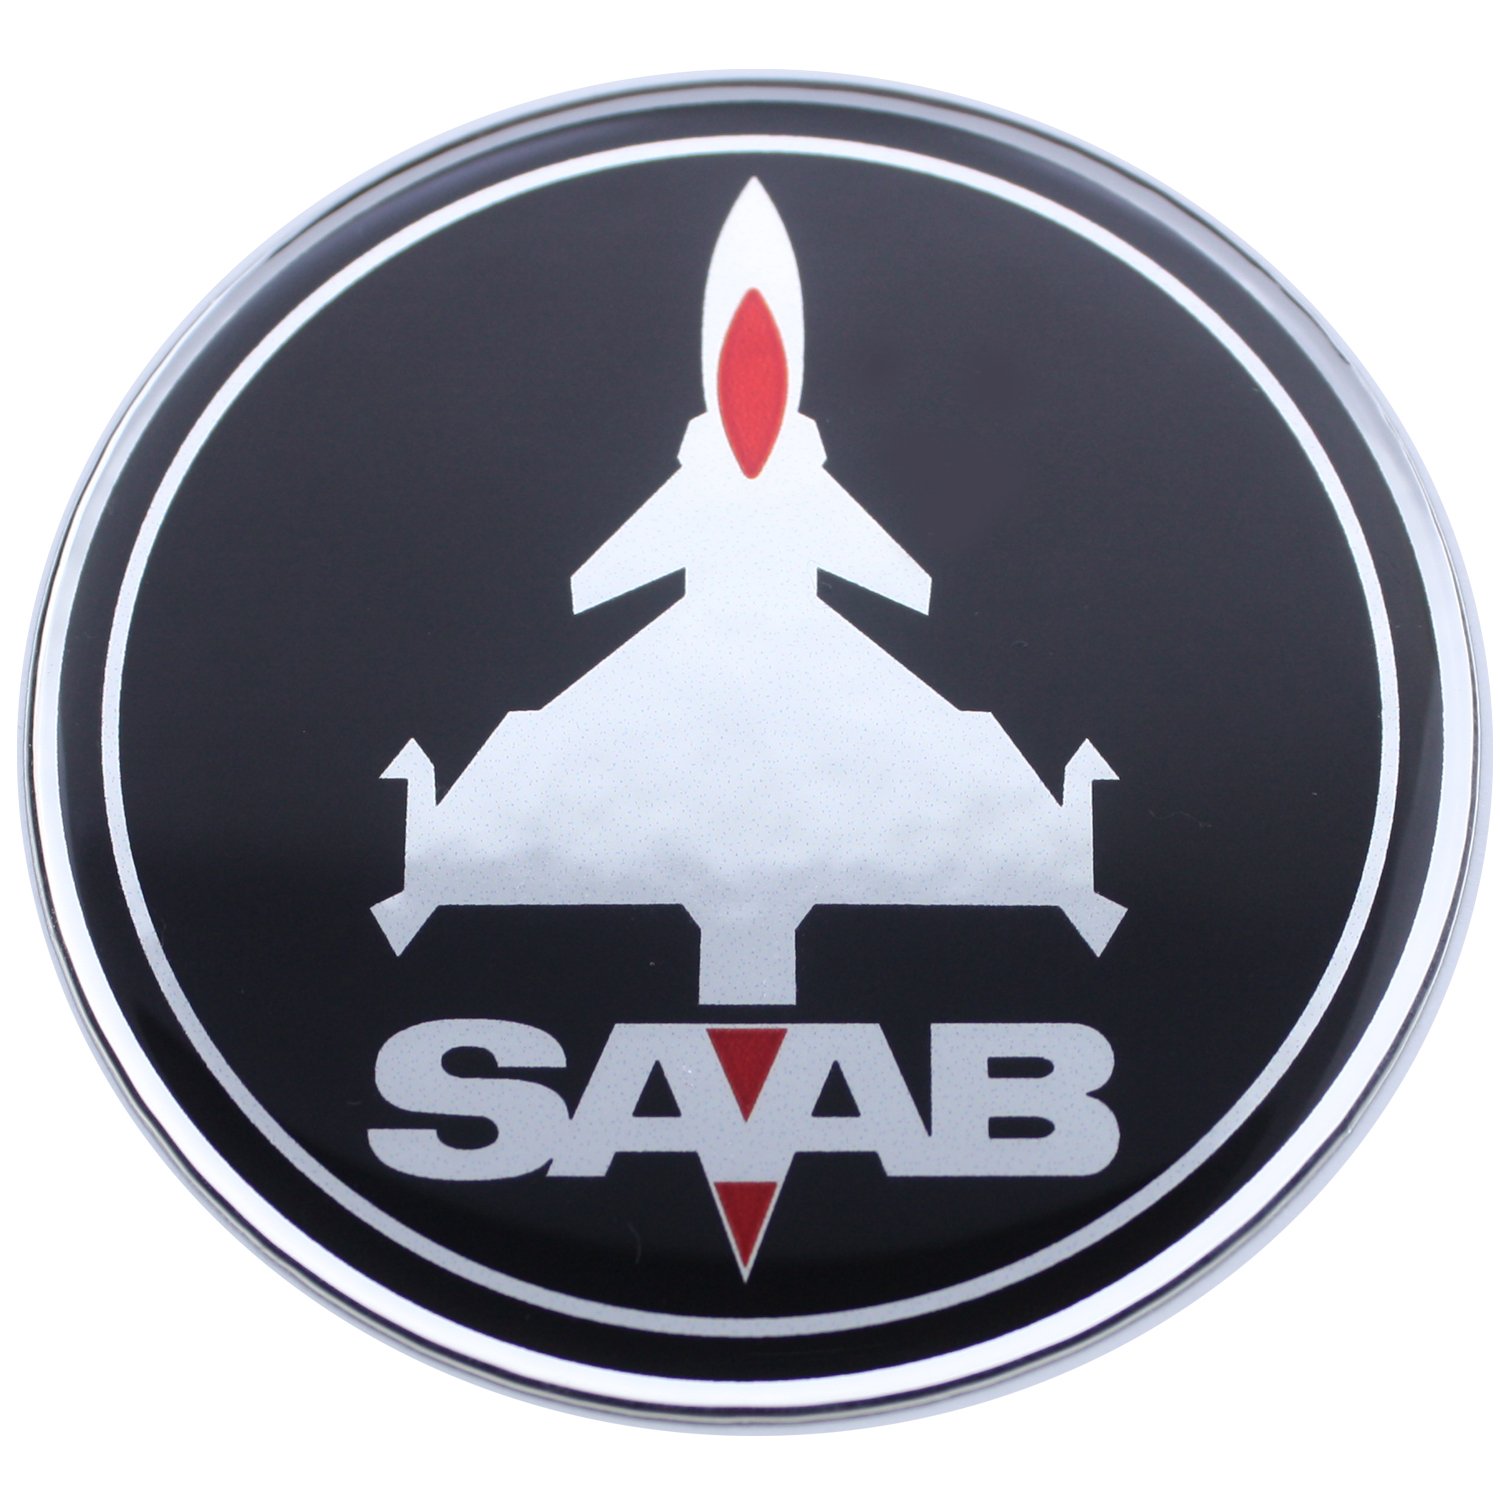 EU-Decals 50 mm Jet-Flugzeug SAB schwarz rot Chrom Motorhaubenabzeichen Emblem gewölbt 3D Aufkleber selbstklebende Rückseite 9-3 von EU-Decals